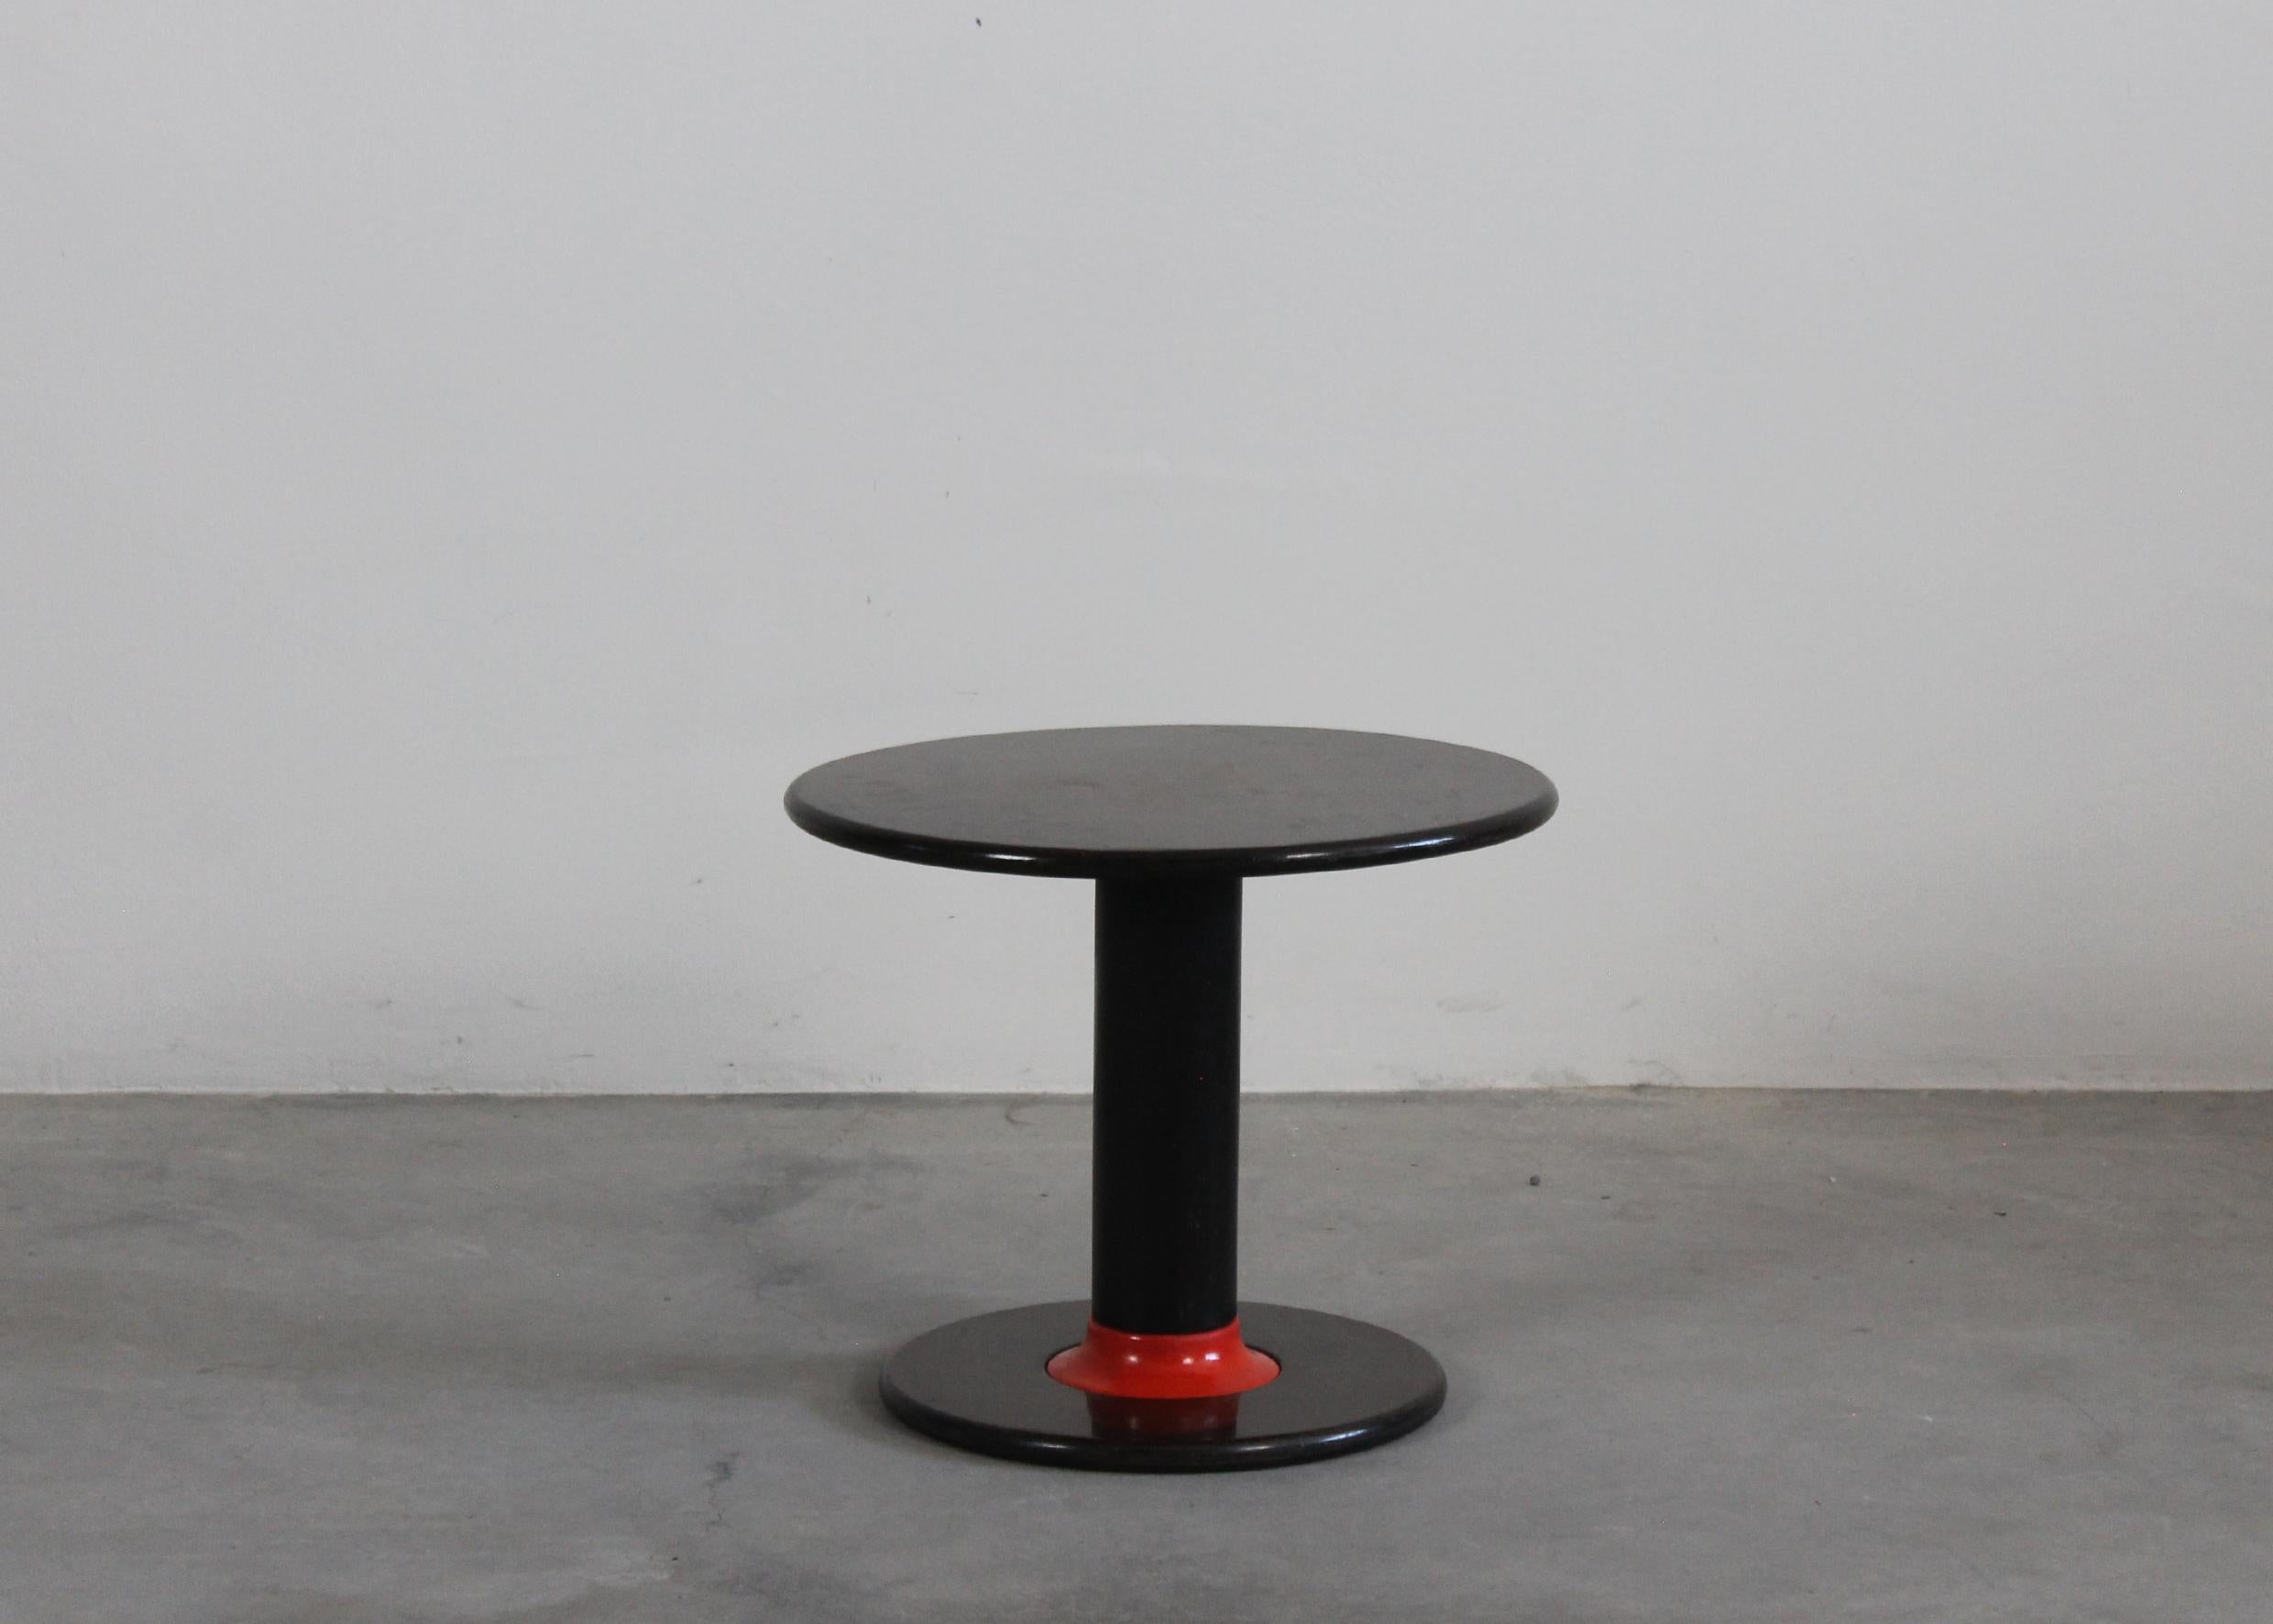 Table d'appoint ronde Rocchettone réalisée en bois de noyer laqué avec des décorations en plastique orange, conçue par Ettore Sottsass et fabriquée par Poltronova, Agliana en 1964.

Fils d'architecte, Ettore Sottsass JR (1917-2007) est né à